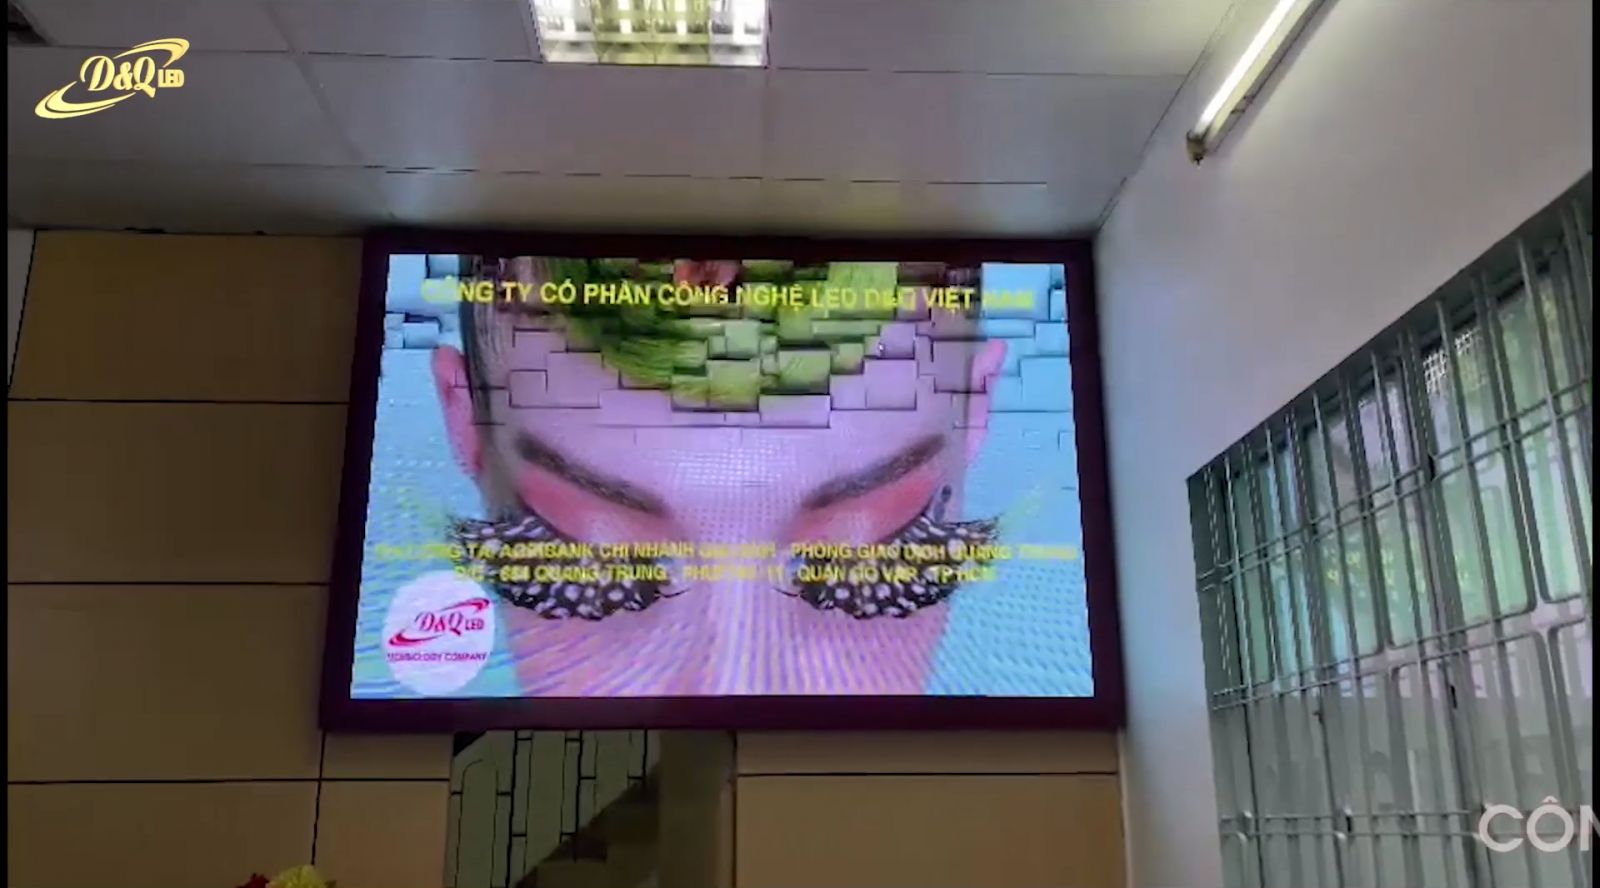 Pdg Quang Trung|Thi Công Màn hình LED trong Ngân hàng Agribank- Pdg Quang Trung - chi nhánh Gia Định